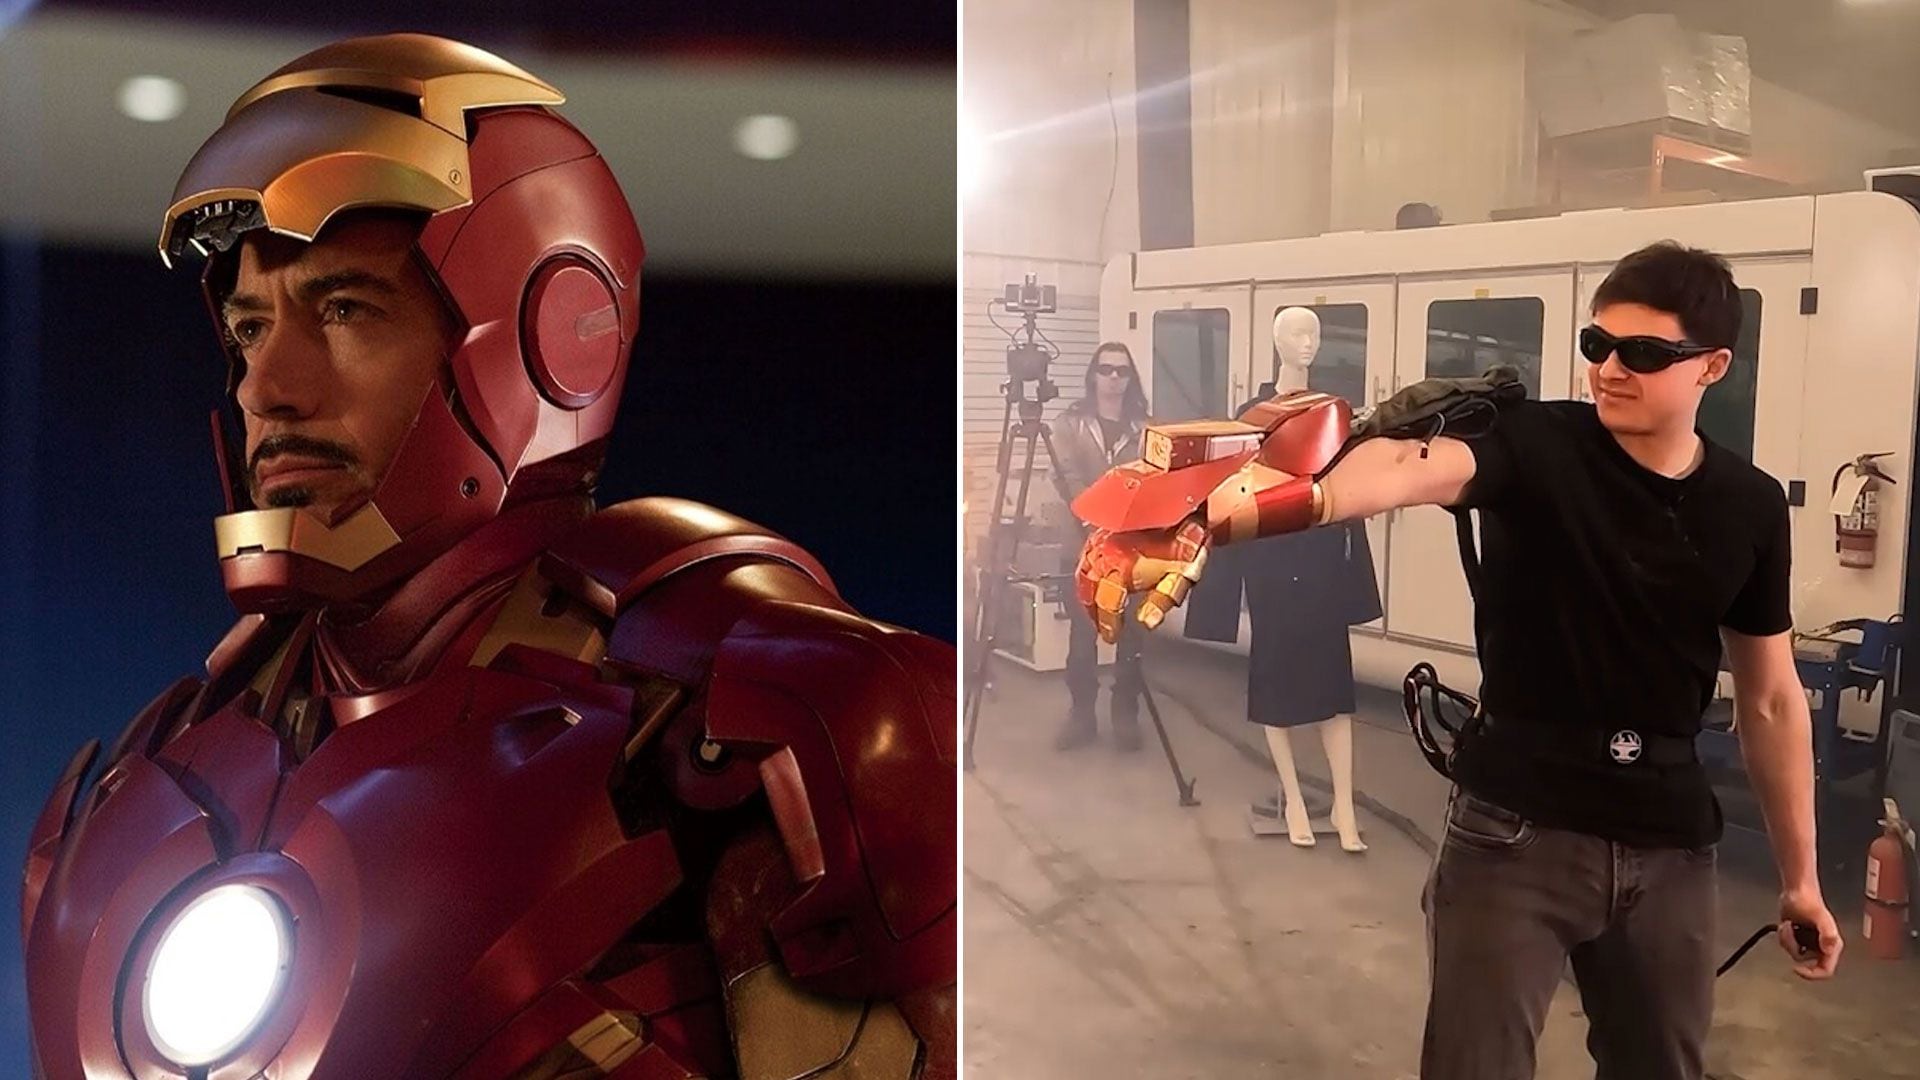 El guantelete de Iron Man en la vida real